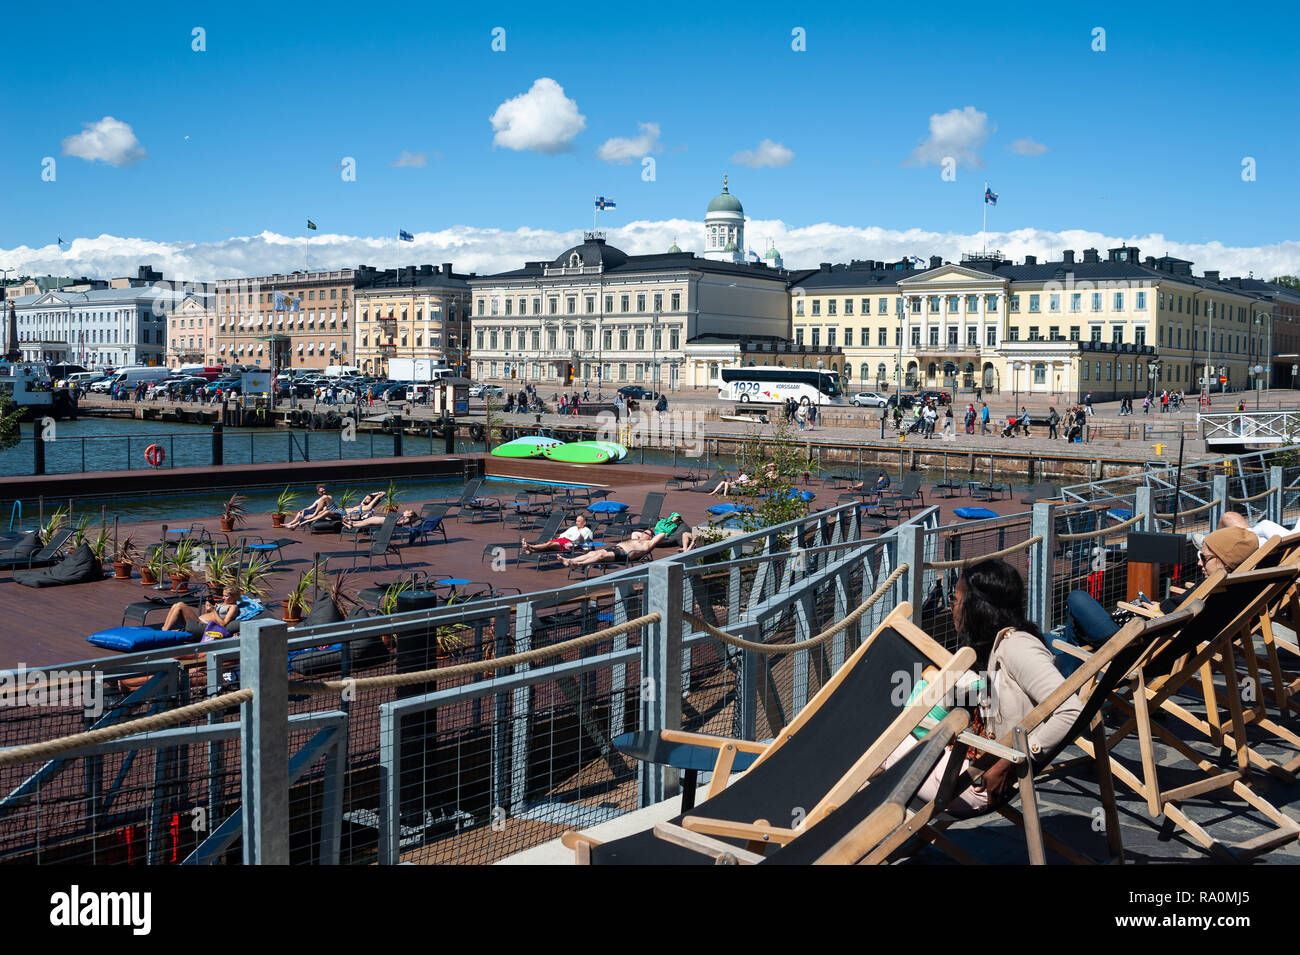 23.06.2018 - Helsinki, Finnland, Europa - Ein Blick auf die Sonnenterrasse des Allas Sea Pool mit Hafen, Marktplatz und dem Praesidentenpalais im Hint Stock Photo